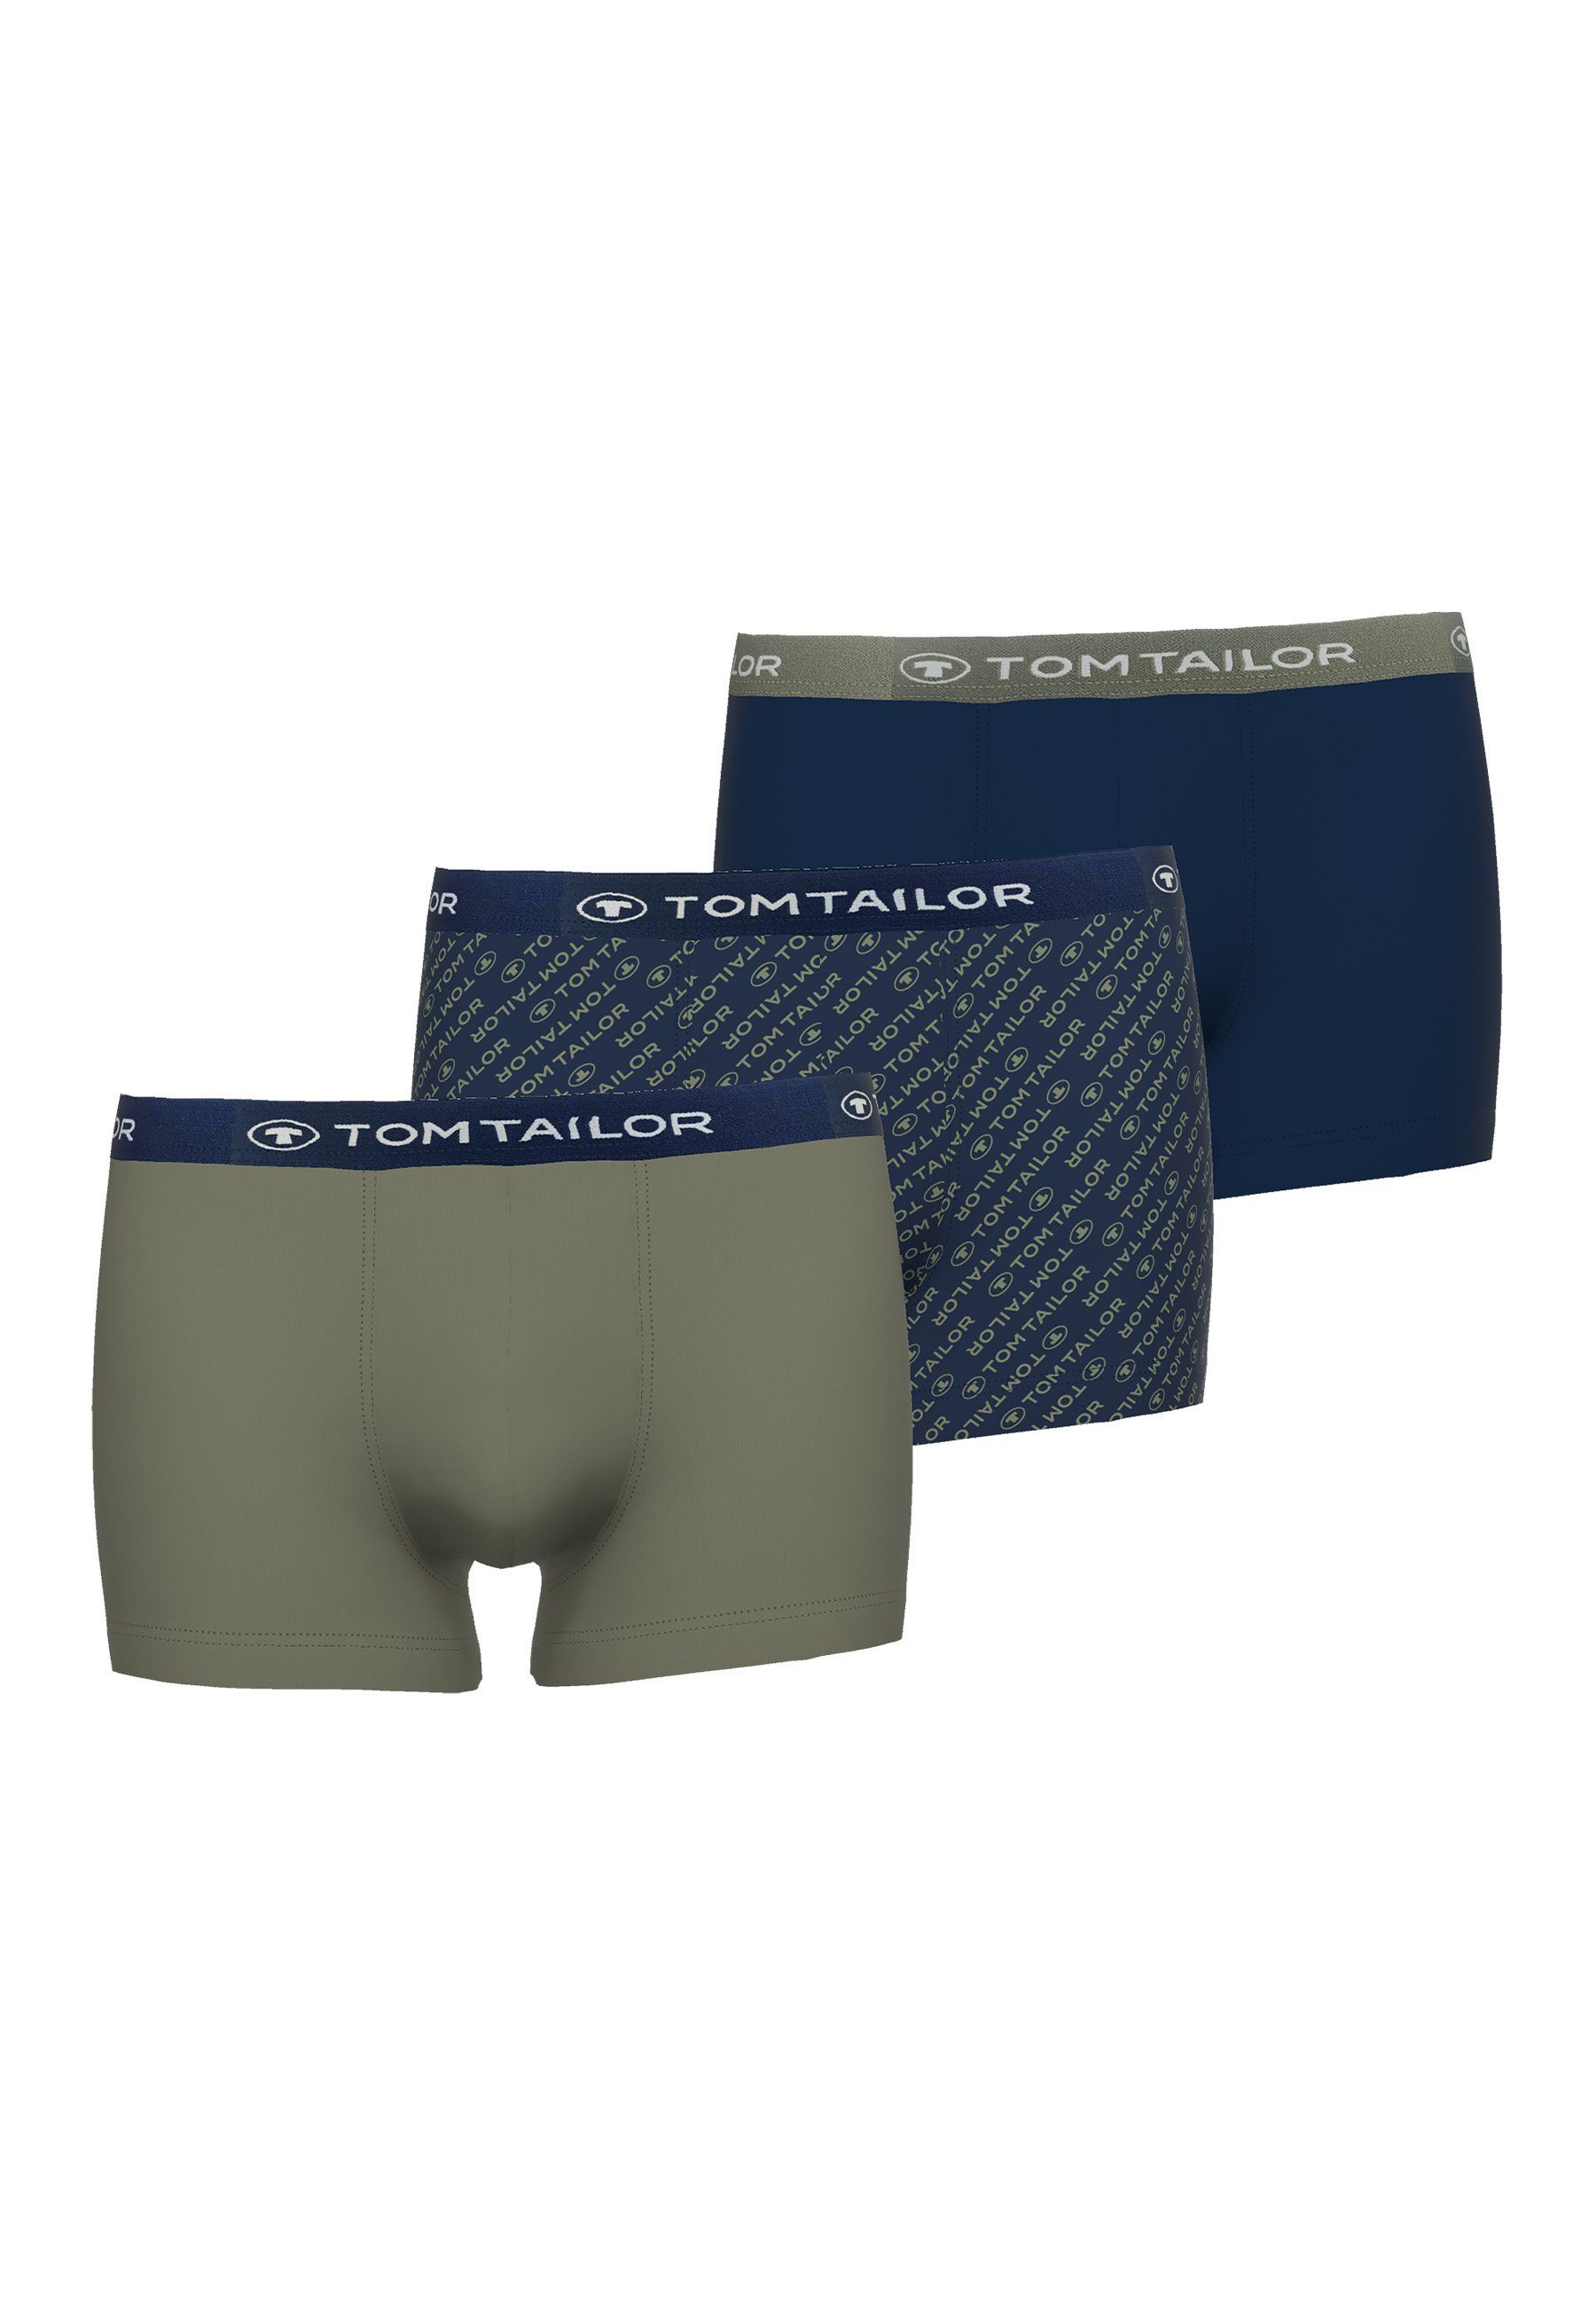 TOM TAILOR Boxershorts TOM TAILOR Herren Hip Pants blau bedruckt 3er Pack (3-St) blau-dunkel-Allover